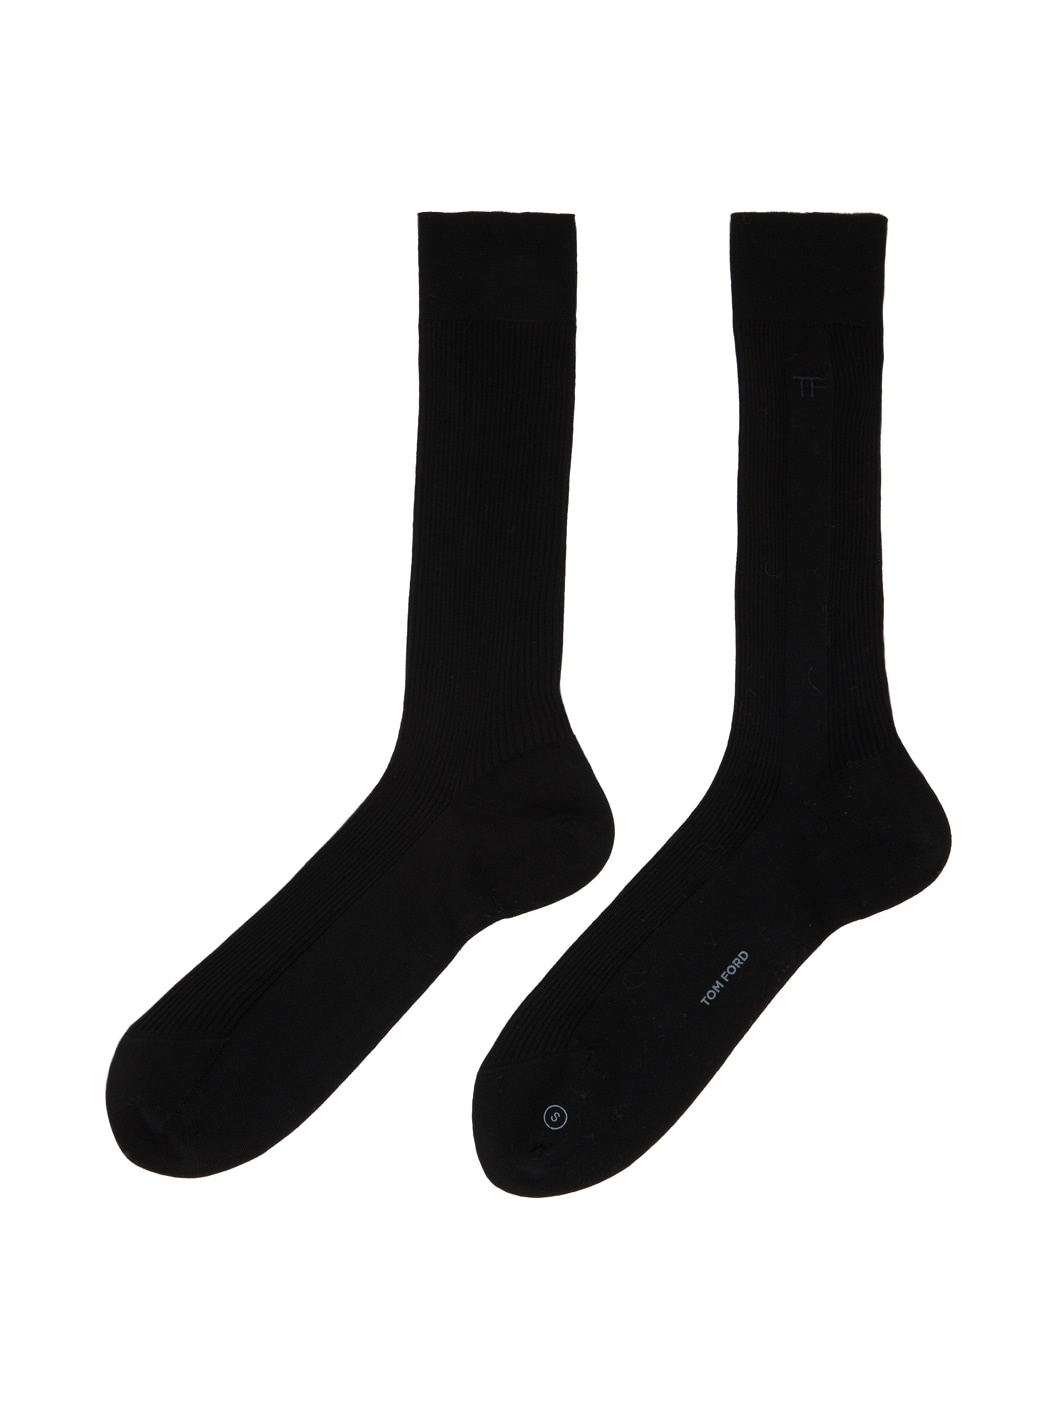 Black Embroidered Socks - 2